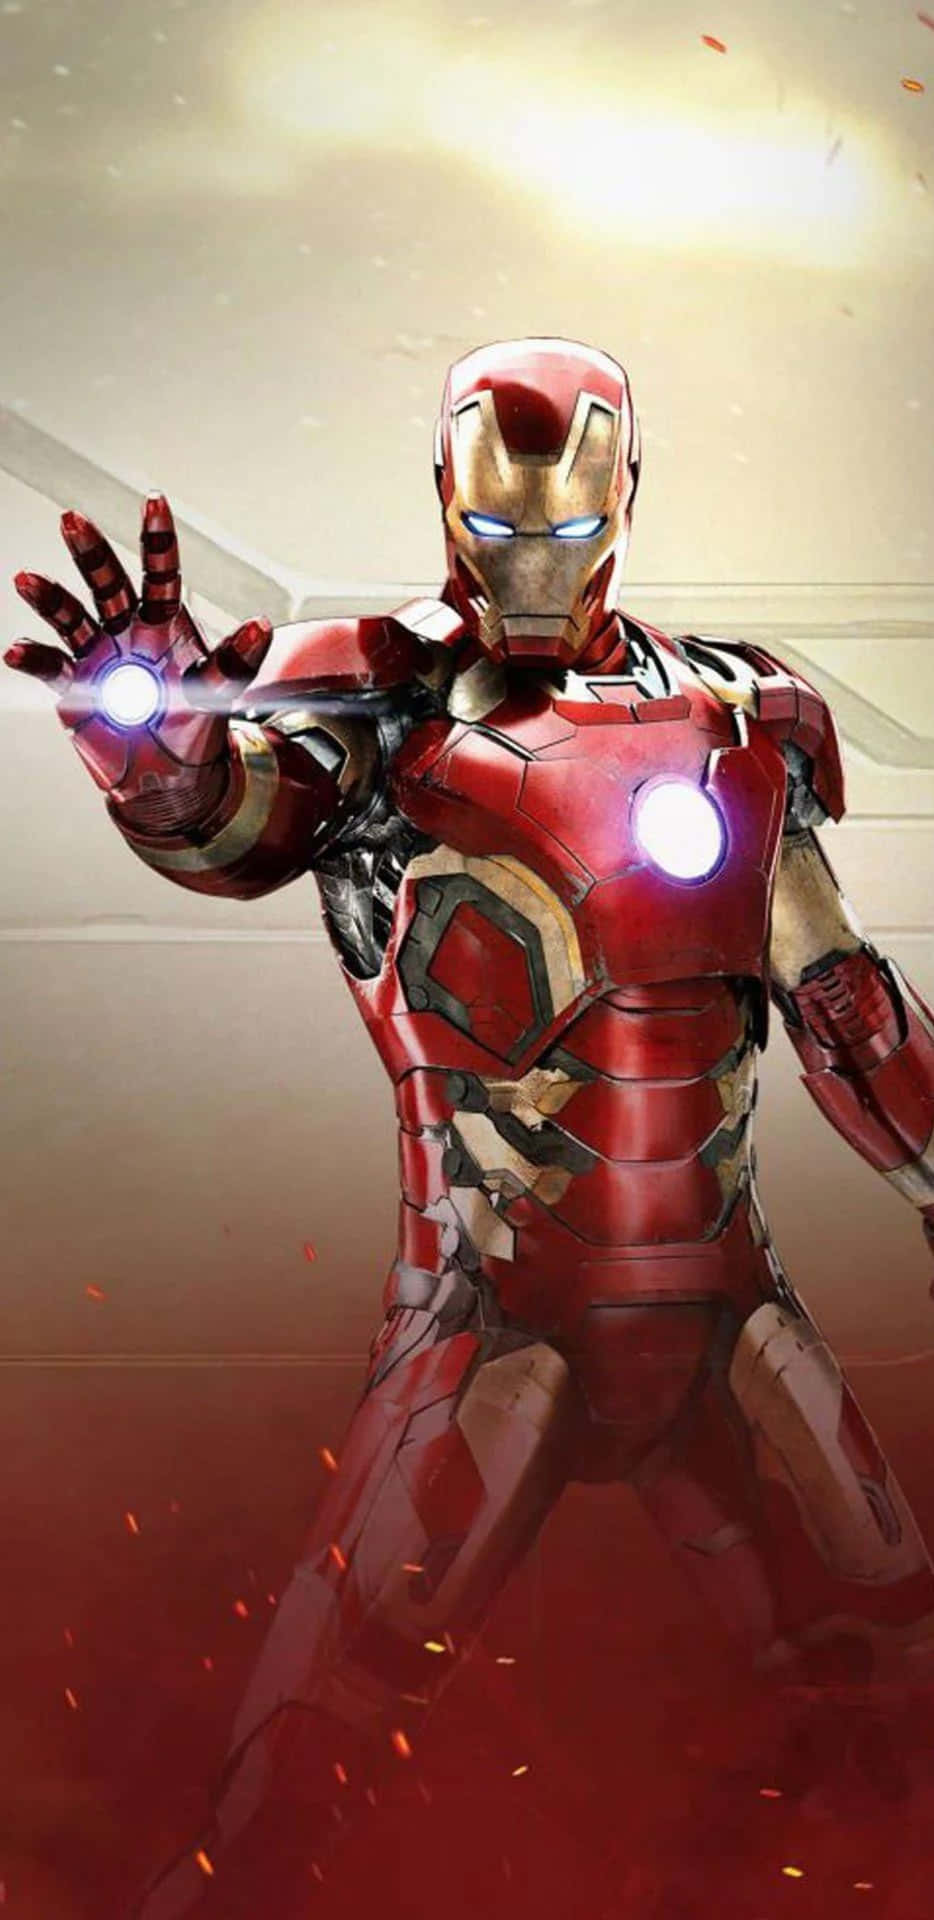 Pixel3xl Iron Man Repulsor Ray Bakgrundsbild.